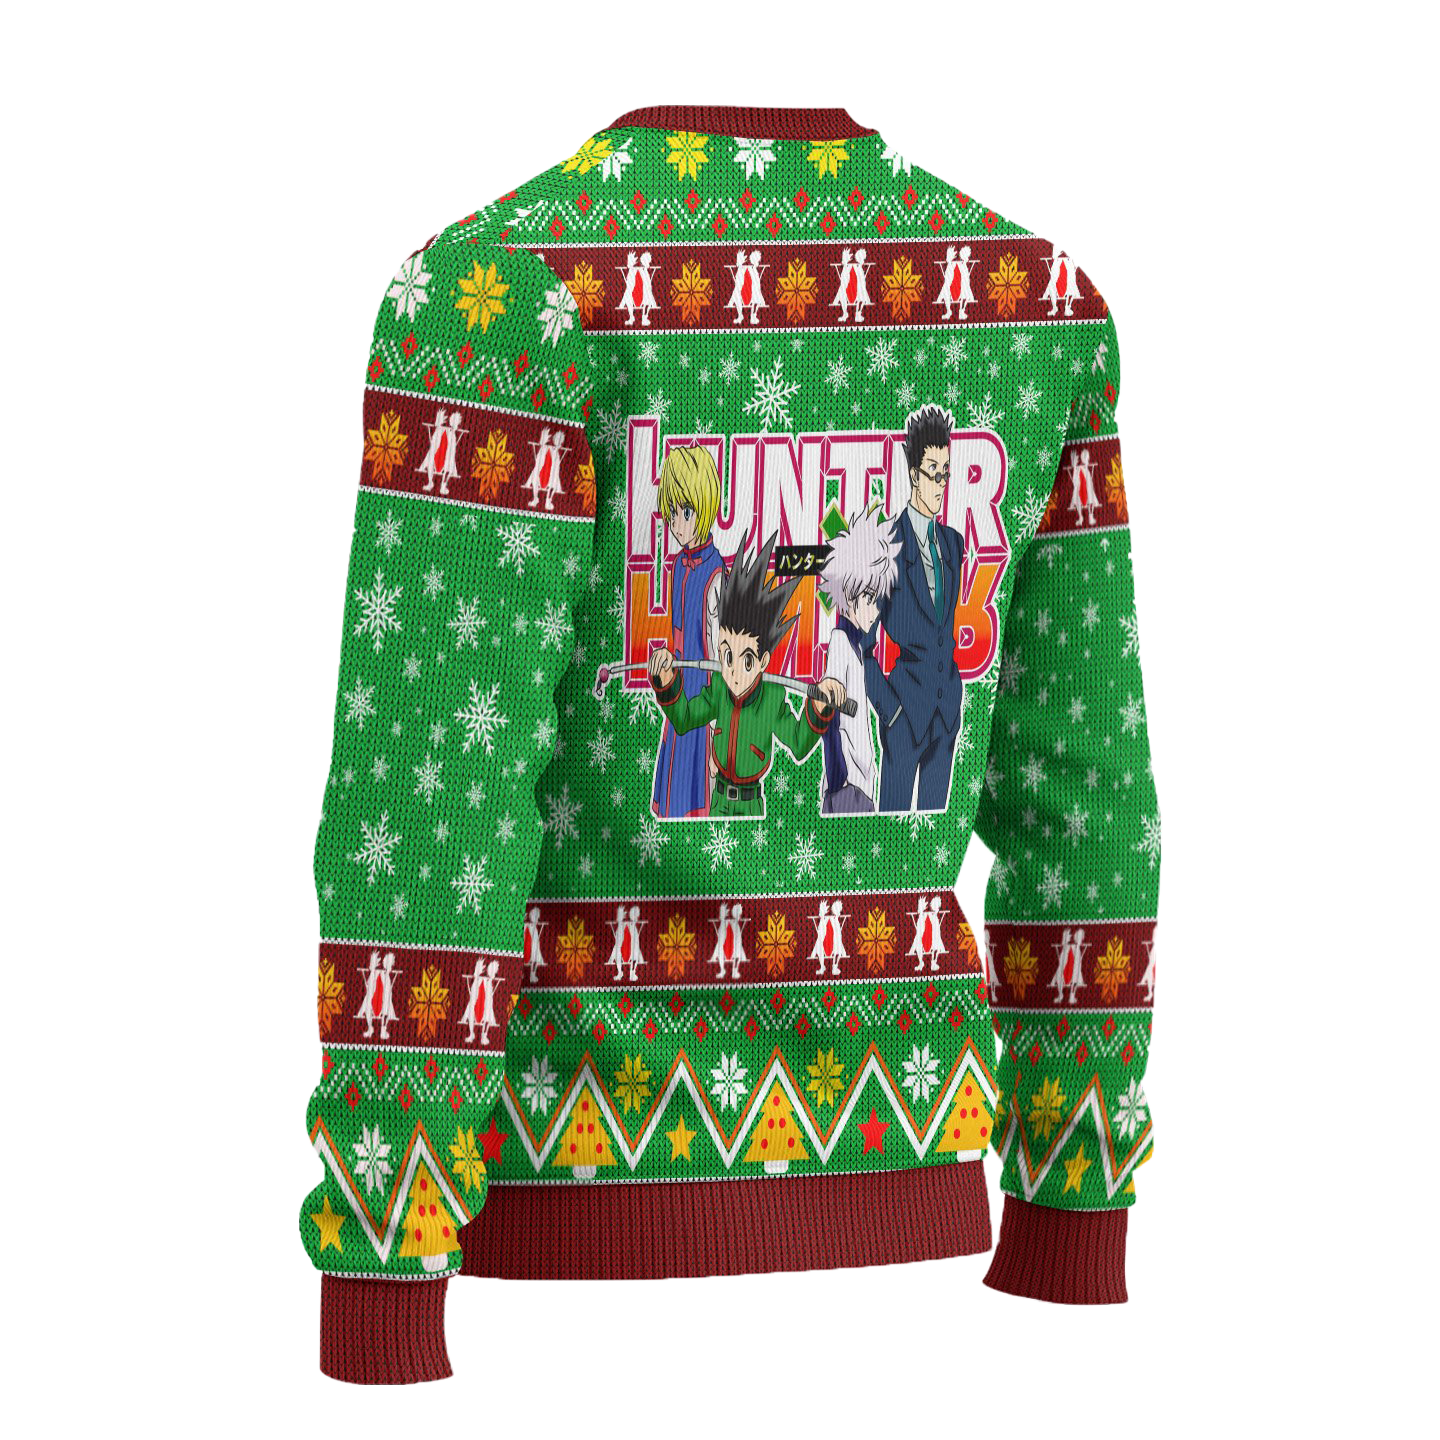 Gon Freecss Anime Ugly Christmas Sweater Hunter x Hunter Xmas Gift